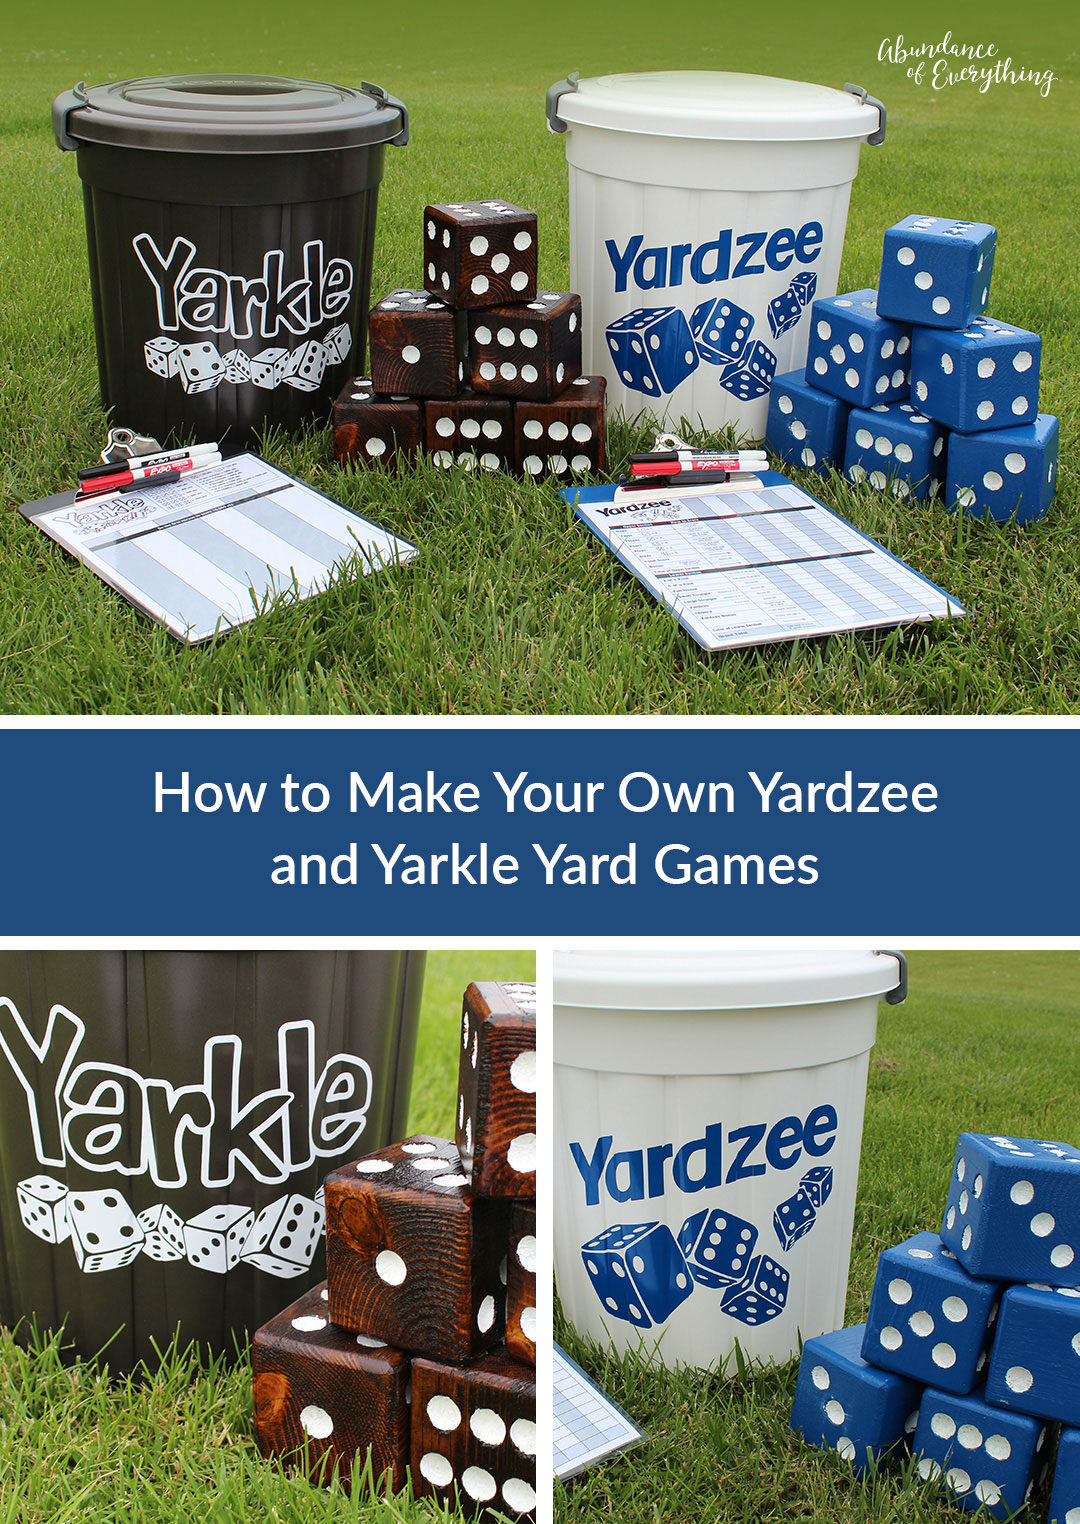 Yardzee and Farkle Yard Games